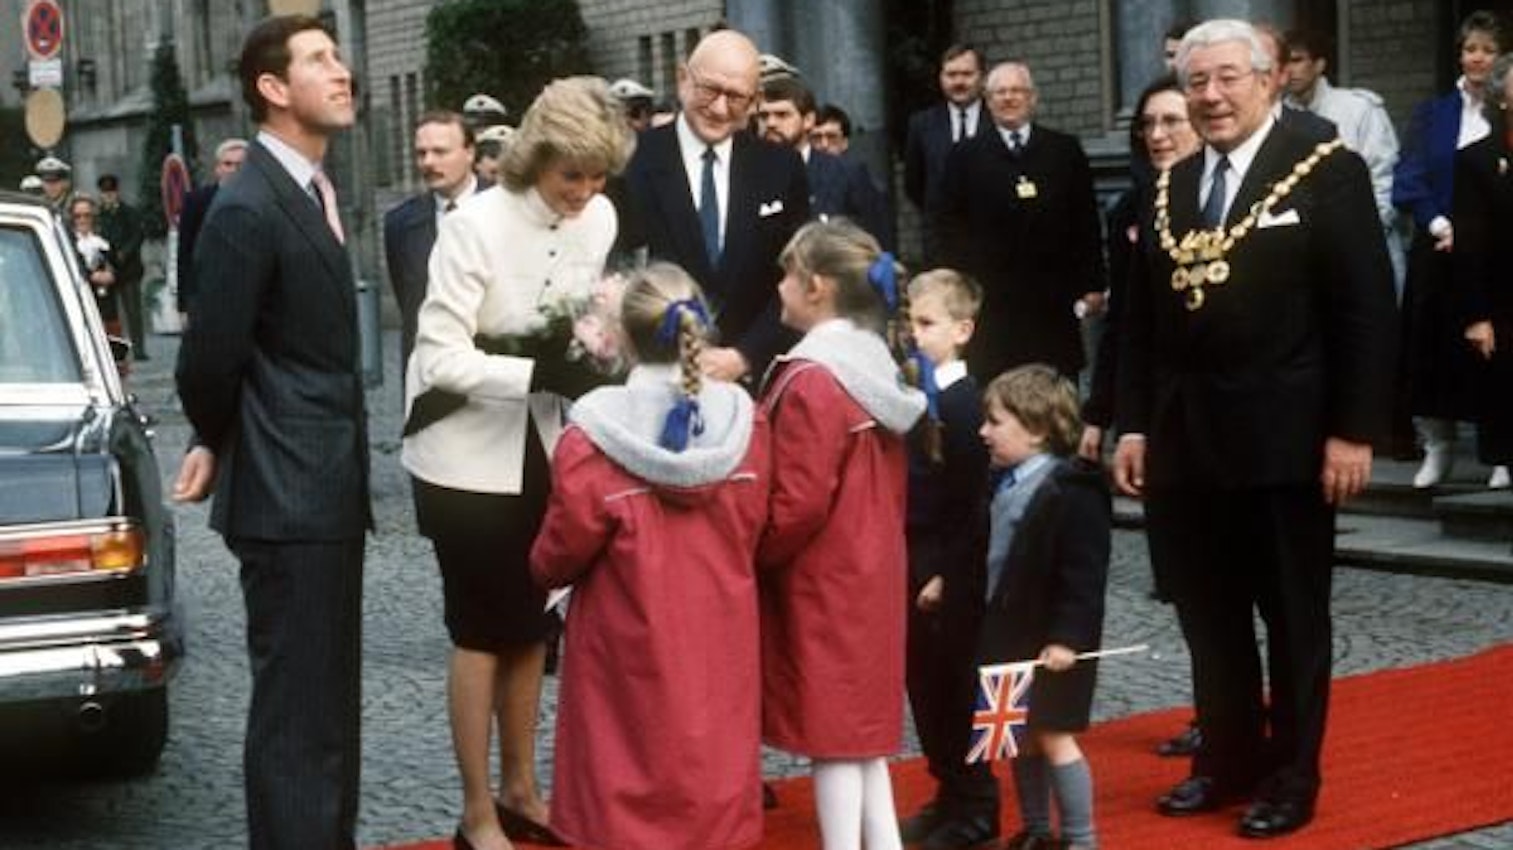 Der britische Kronprinz Charles (l) und seine Gattin Prinzessin Diana am 03.11.1987 in Köln. Während der Kronprinz sich umschaut und nach oben blickt, überreichen Kinder seiner Ehefrau Blumen. Rechts im Bild: Norbert Burger, damaliger Oberbürgermeister von Köln.